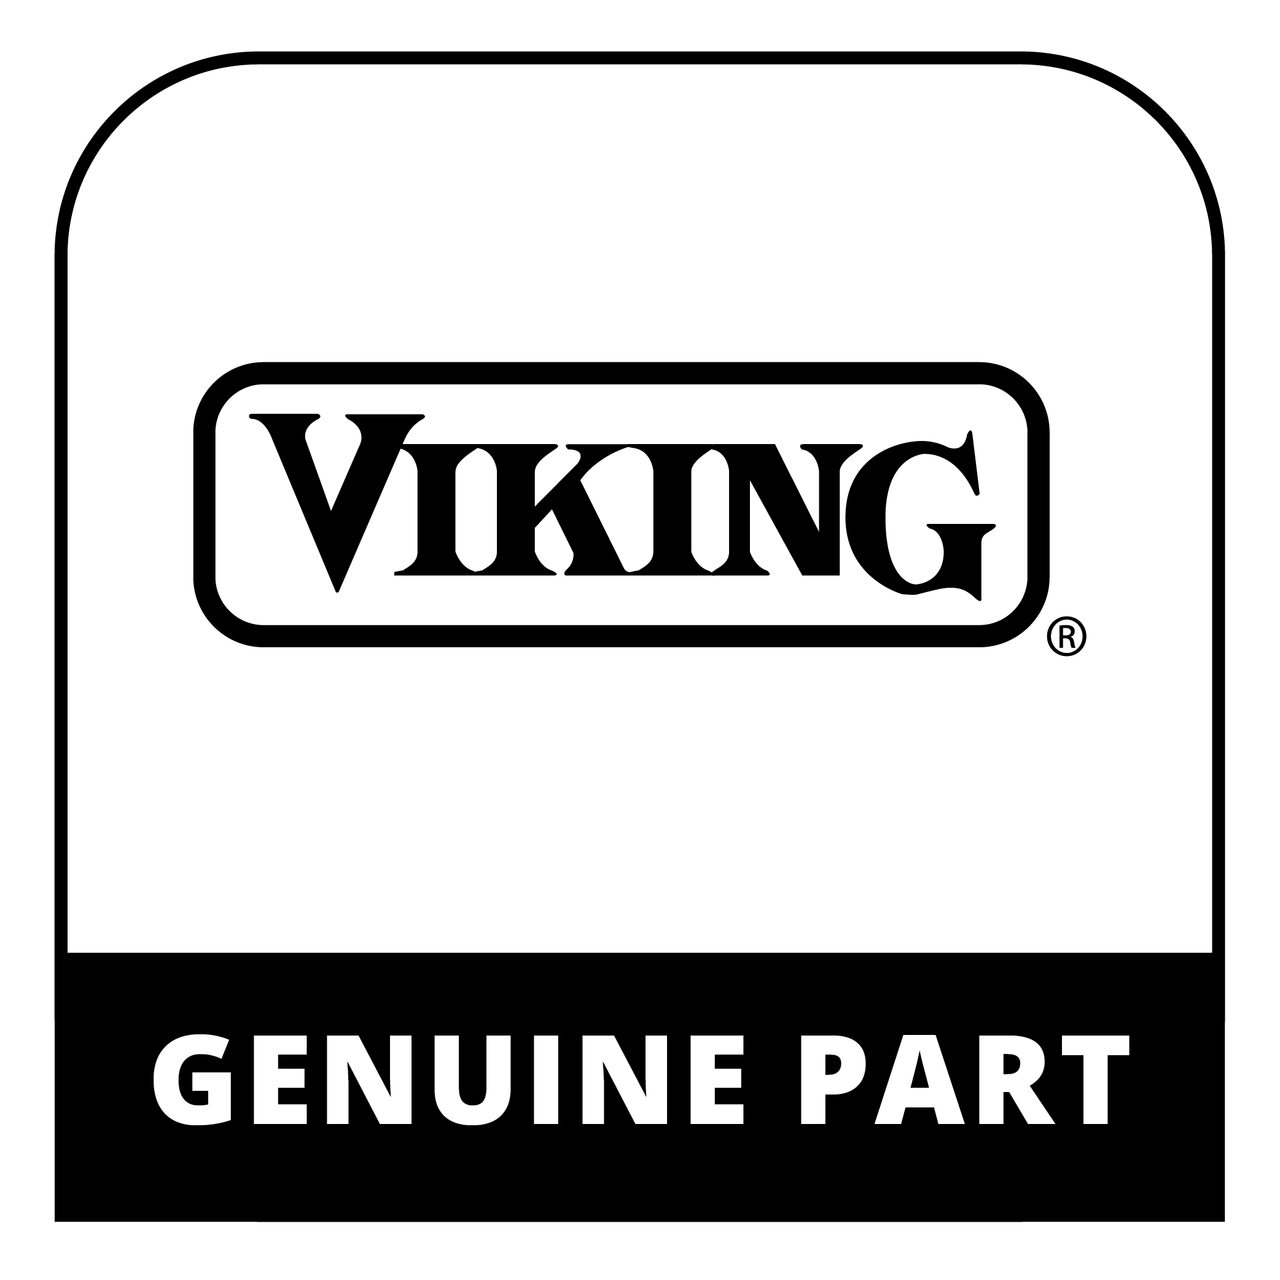 Viking G32012721GM - 27" DOOR PANEL ASSY W/O LOGO * - Genuine Viking Part